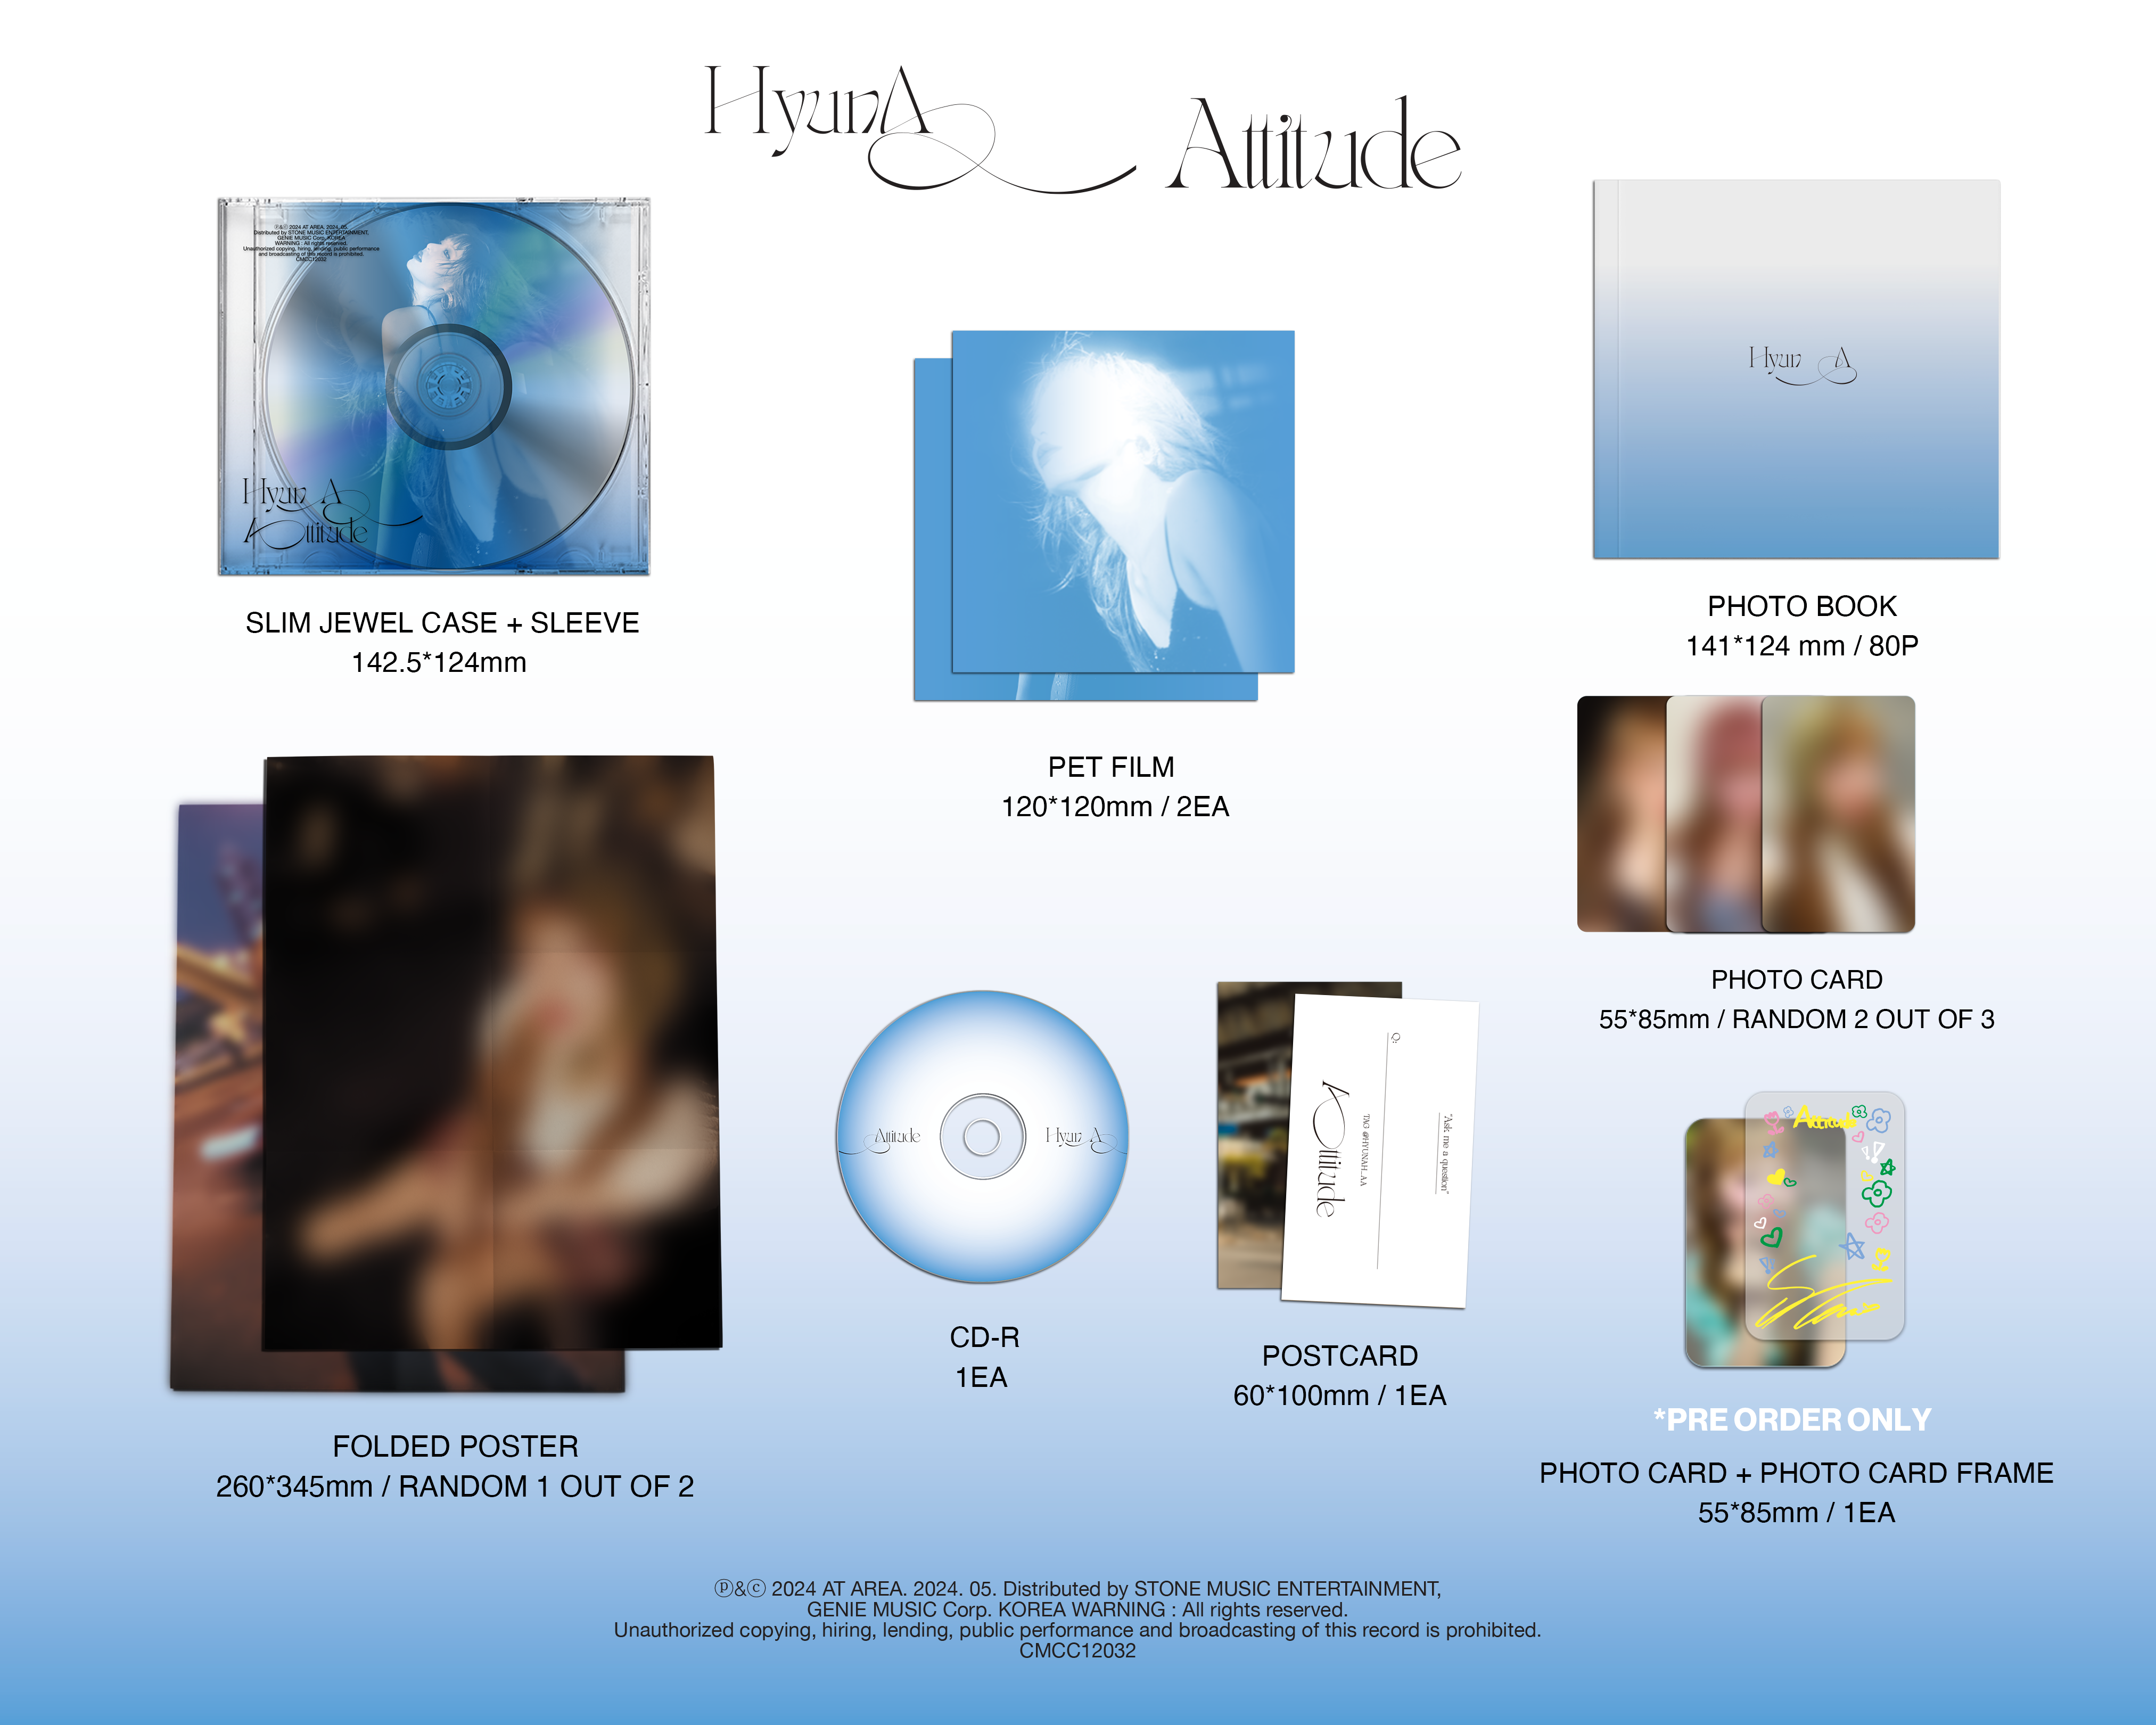 HYUNA EP ALBUM 'ATTITUDE' DETAIL